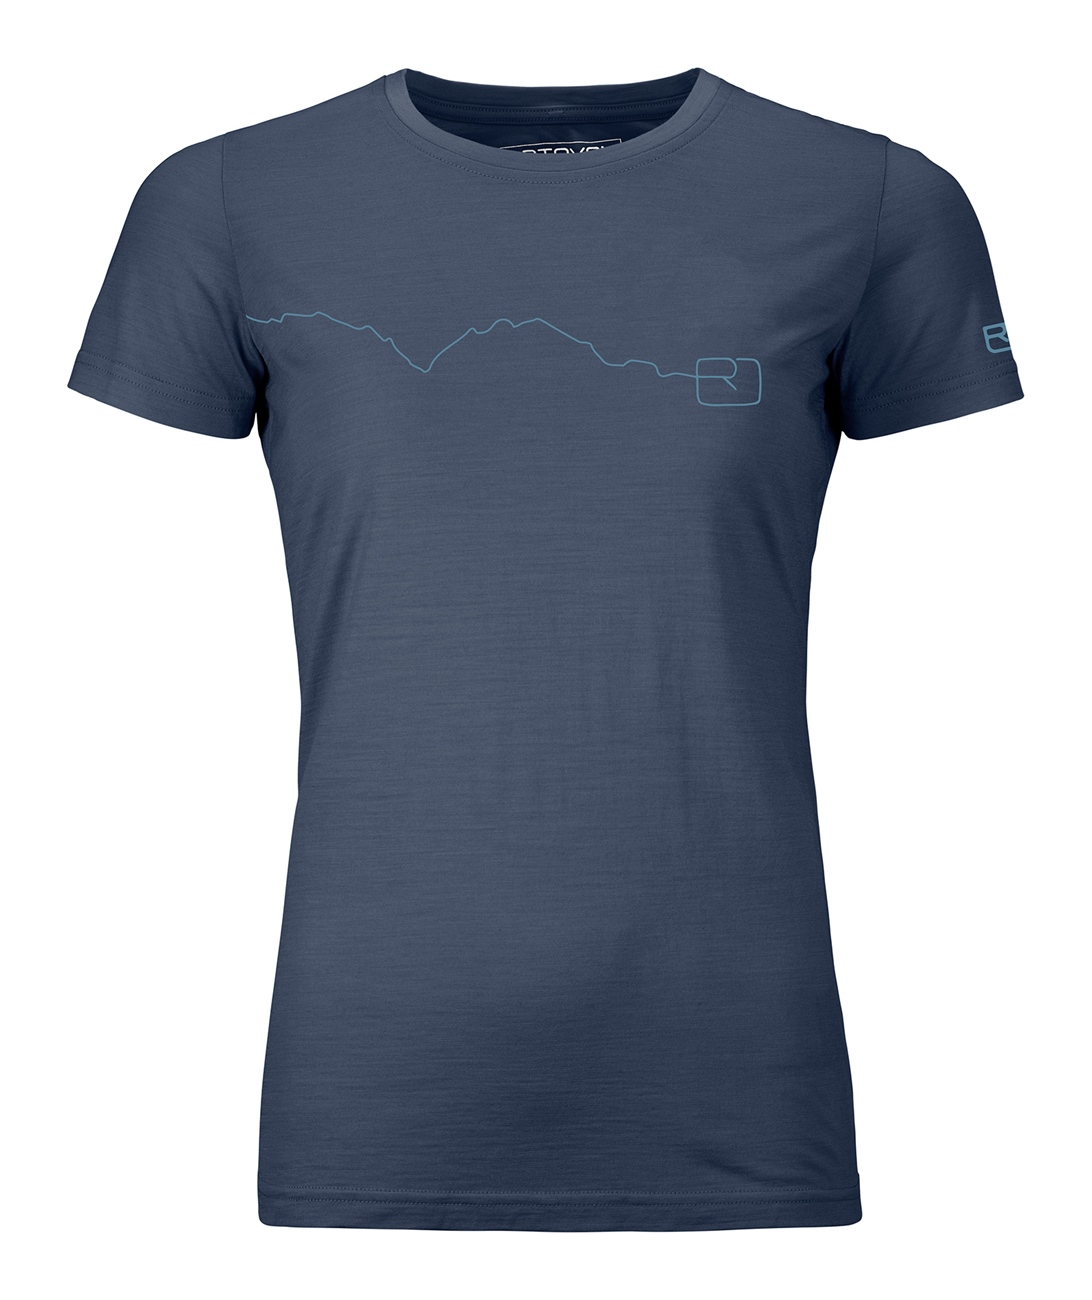 ORTOVOX 120 Tec Mountain T-Shirt W